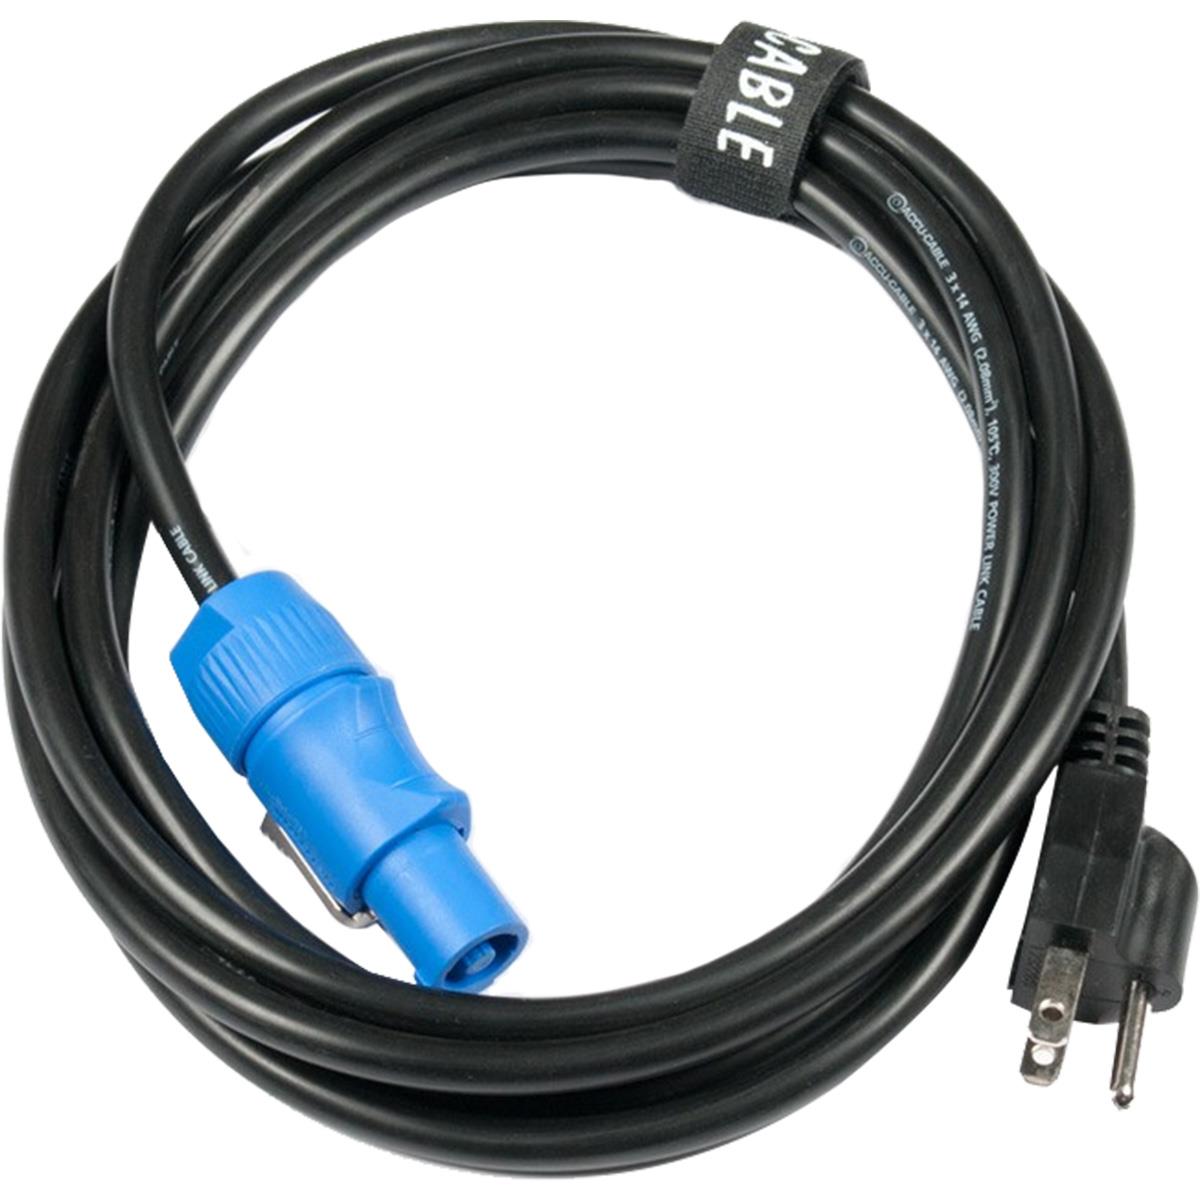 Cable de energía Neutrik PowerCON para video MPC025